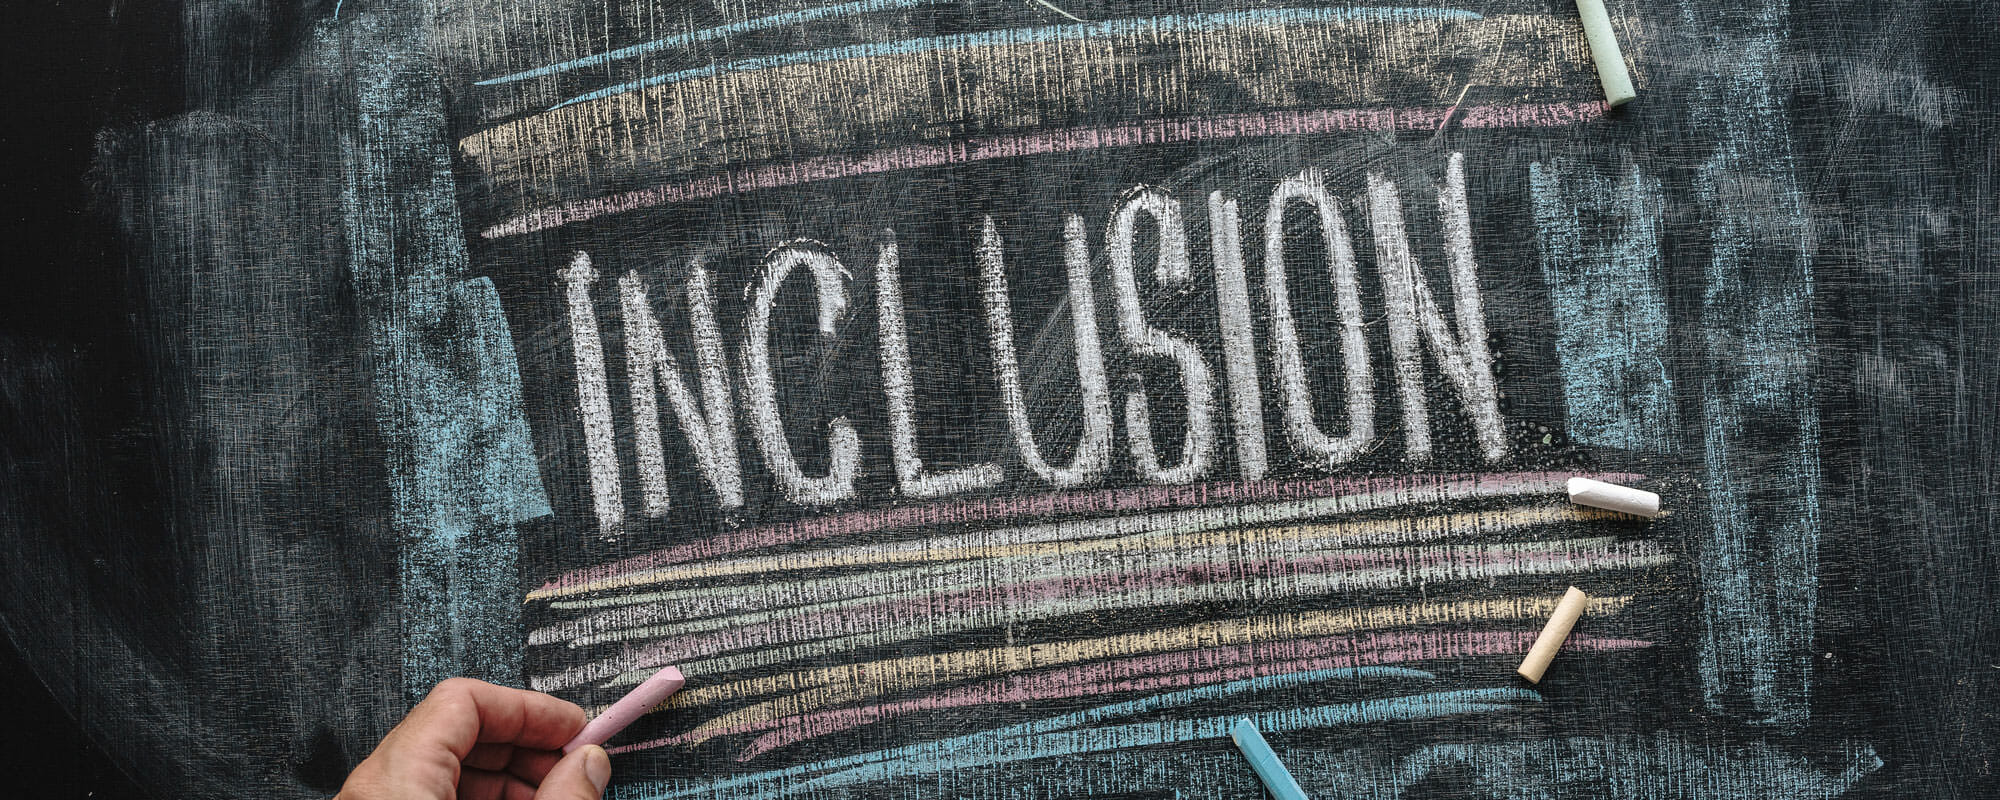 Inclusion written on chalkboard